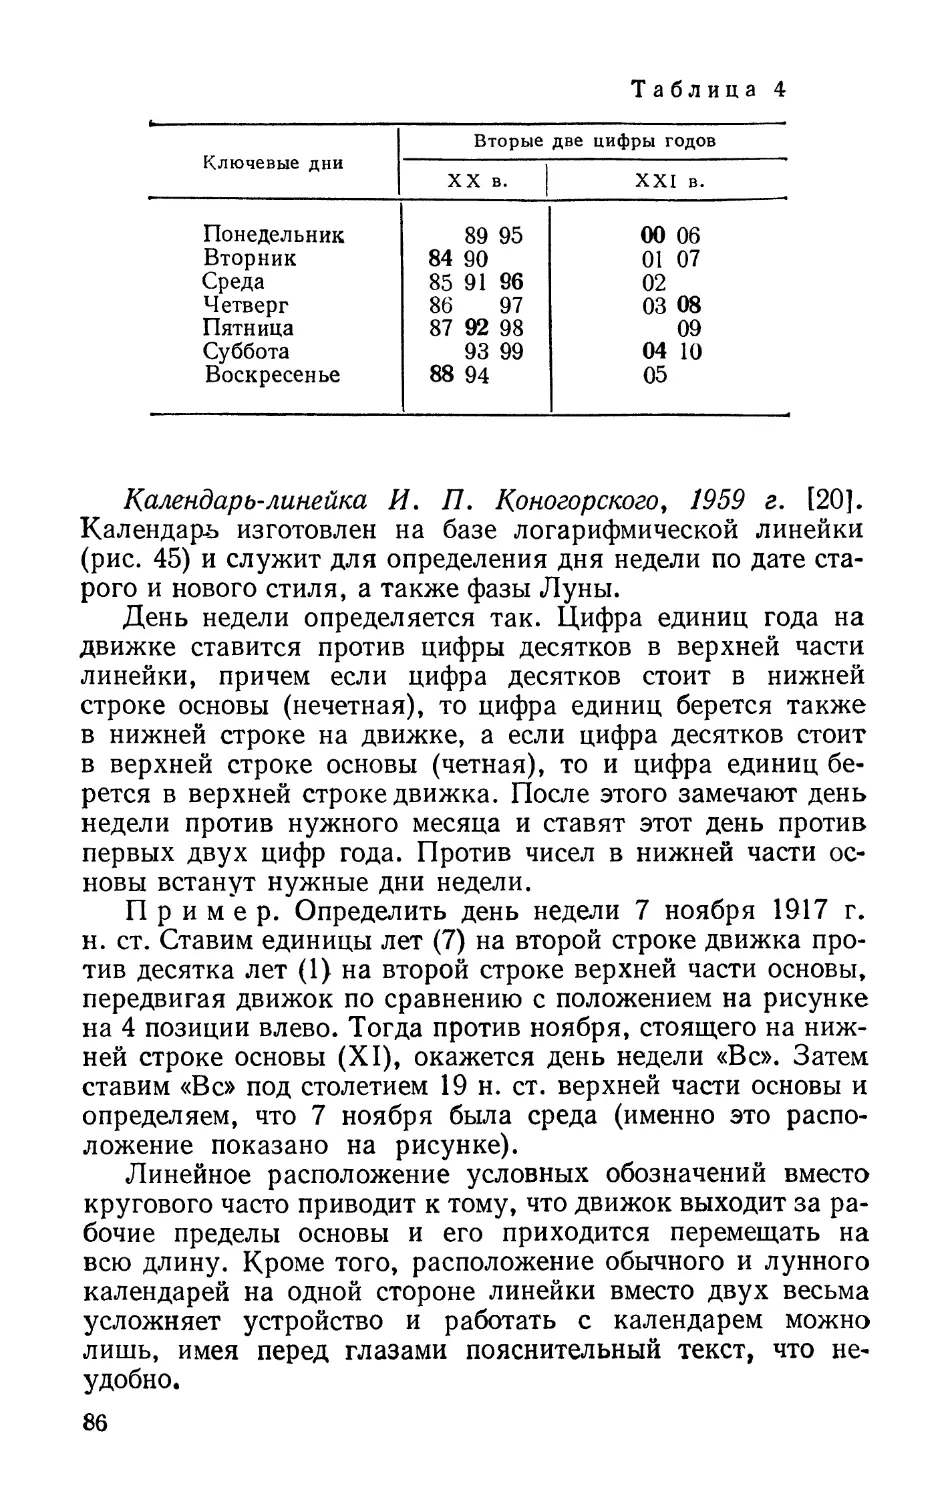 Календарь-линейка И. П. Коногорского, 1959 г.